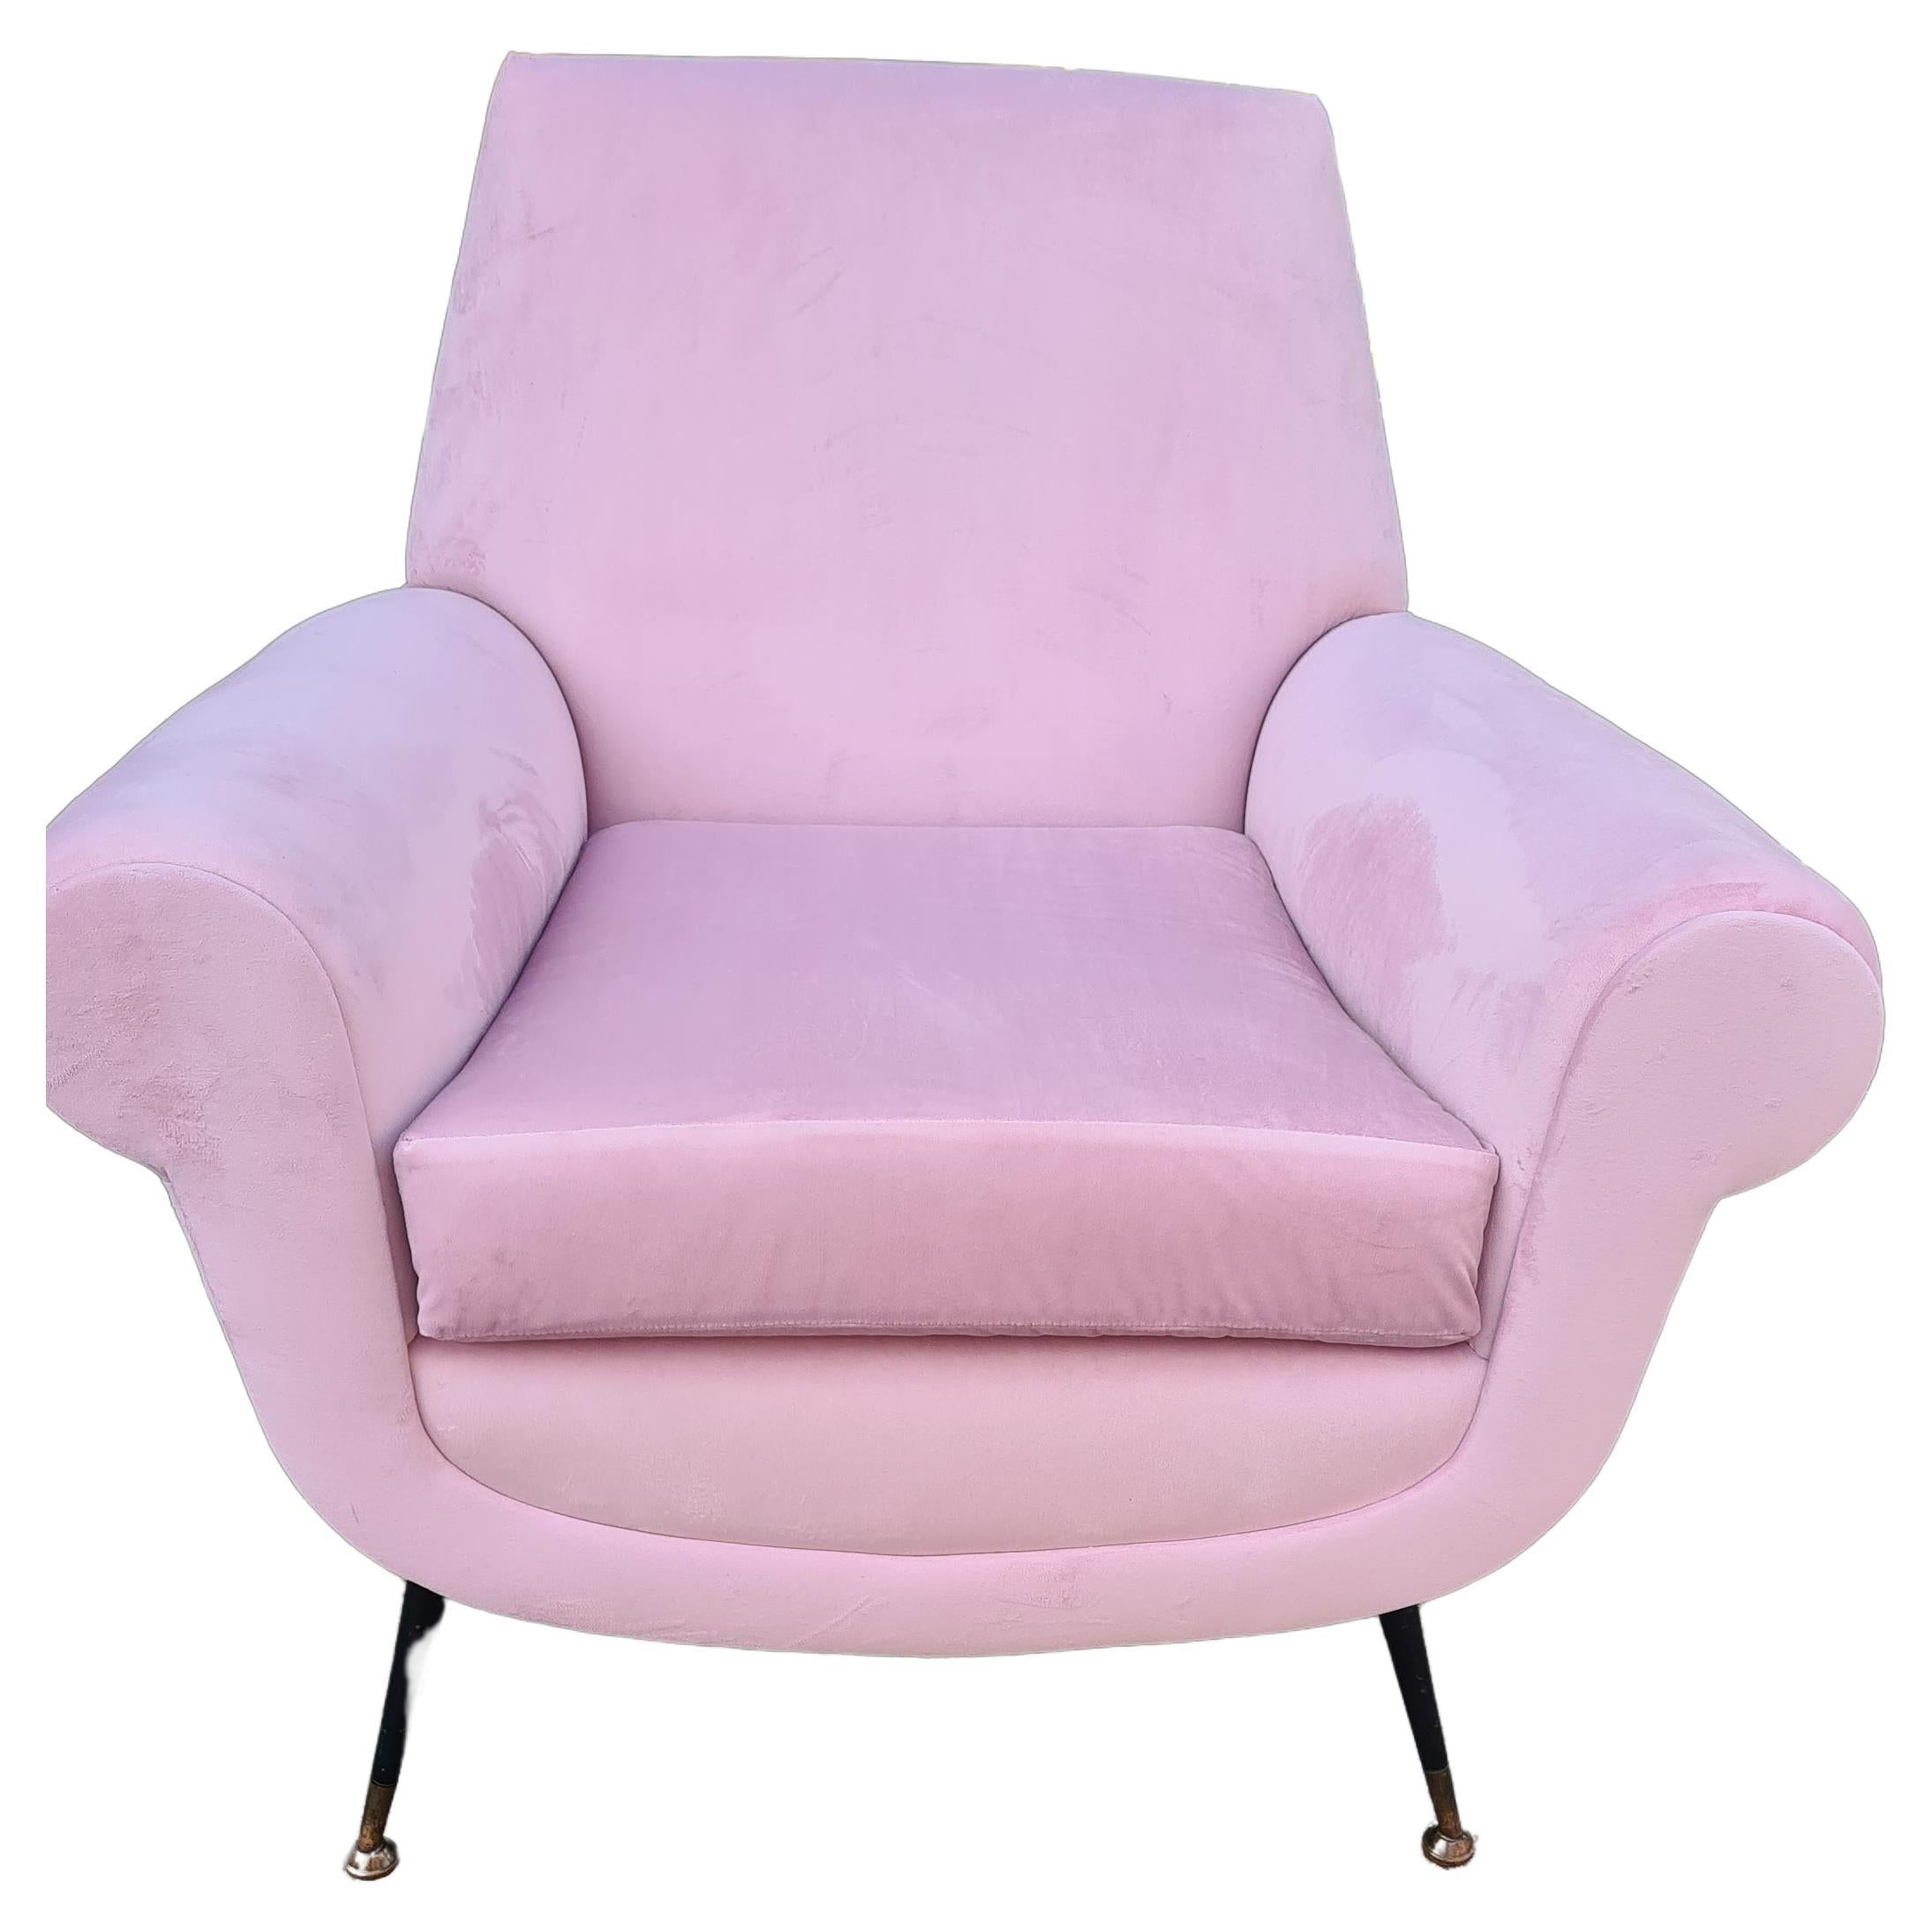 Gigi Radice armchair For Sale